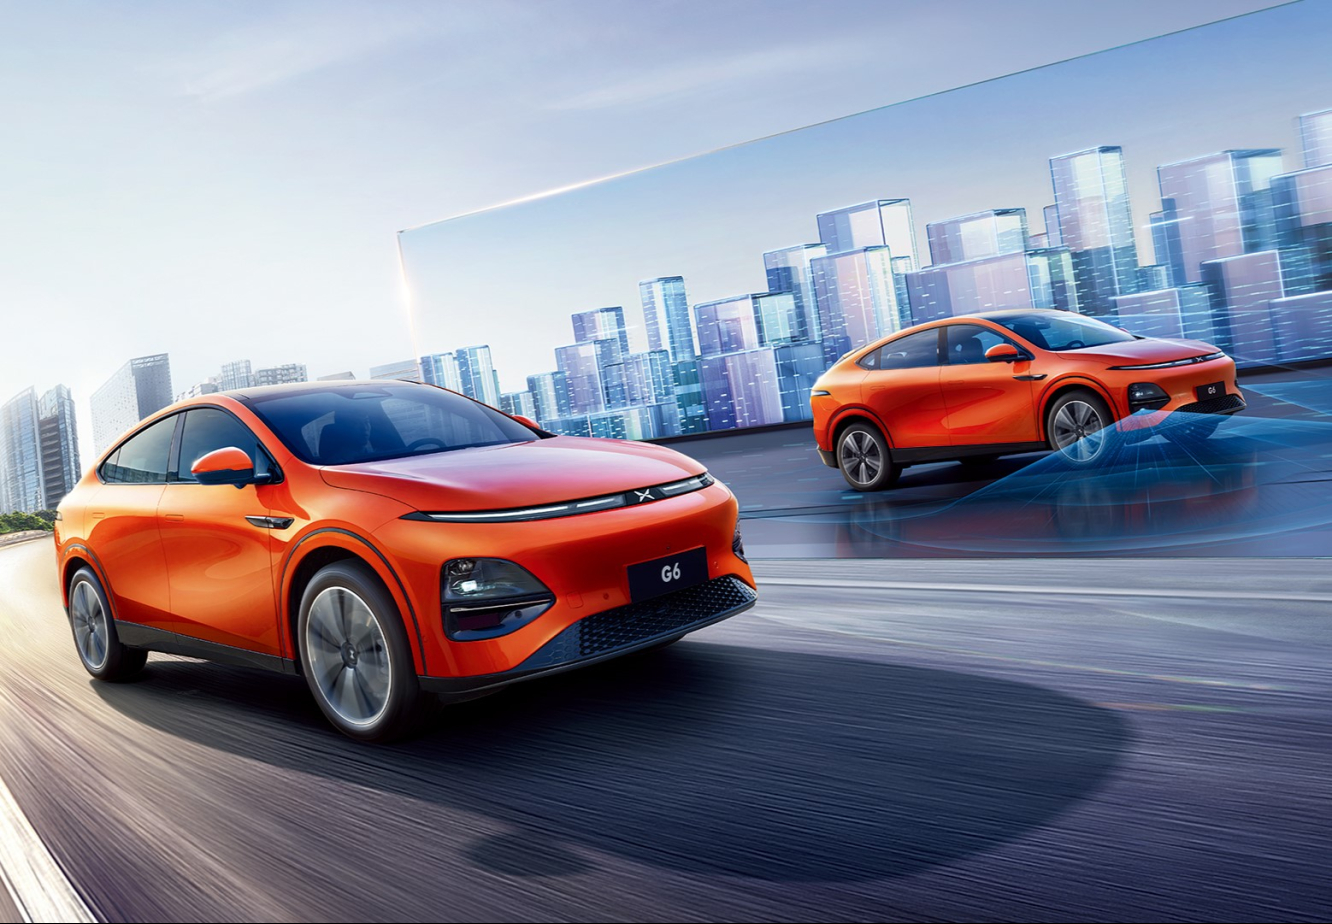 Um den rückläufigen Absatzzahlen in China entgegenzuwirken, beteiligt sich VW nun am chinesischen E-Auto-Startup Xpeng. 